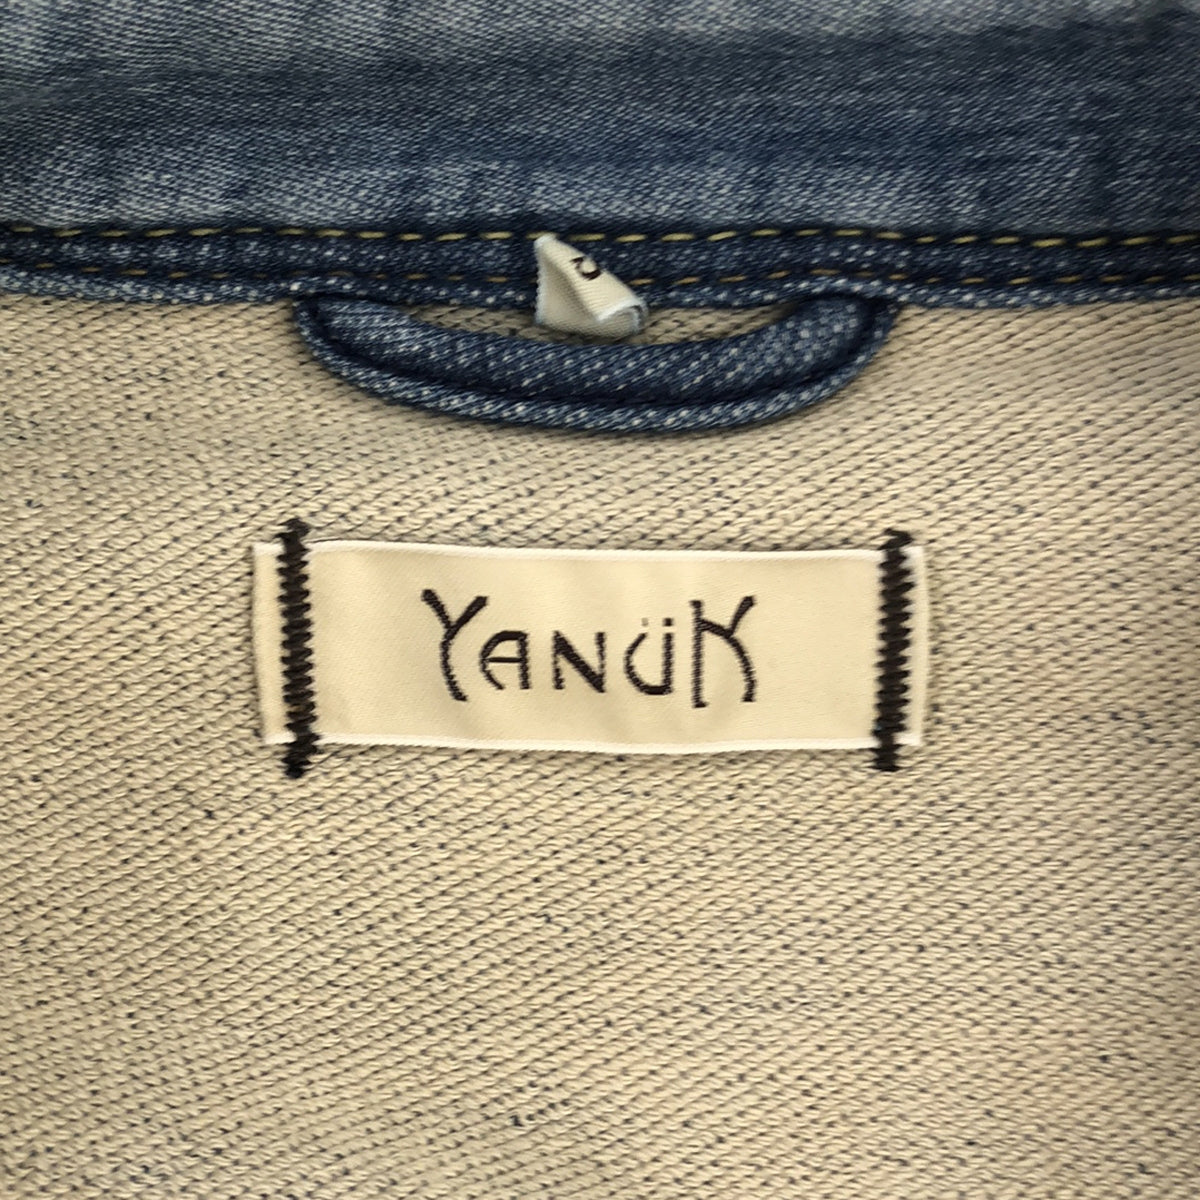 YANUK / ヤヌーク | DENIT デニット ストレッチ ウエスタンシャツ | S | レディース